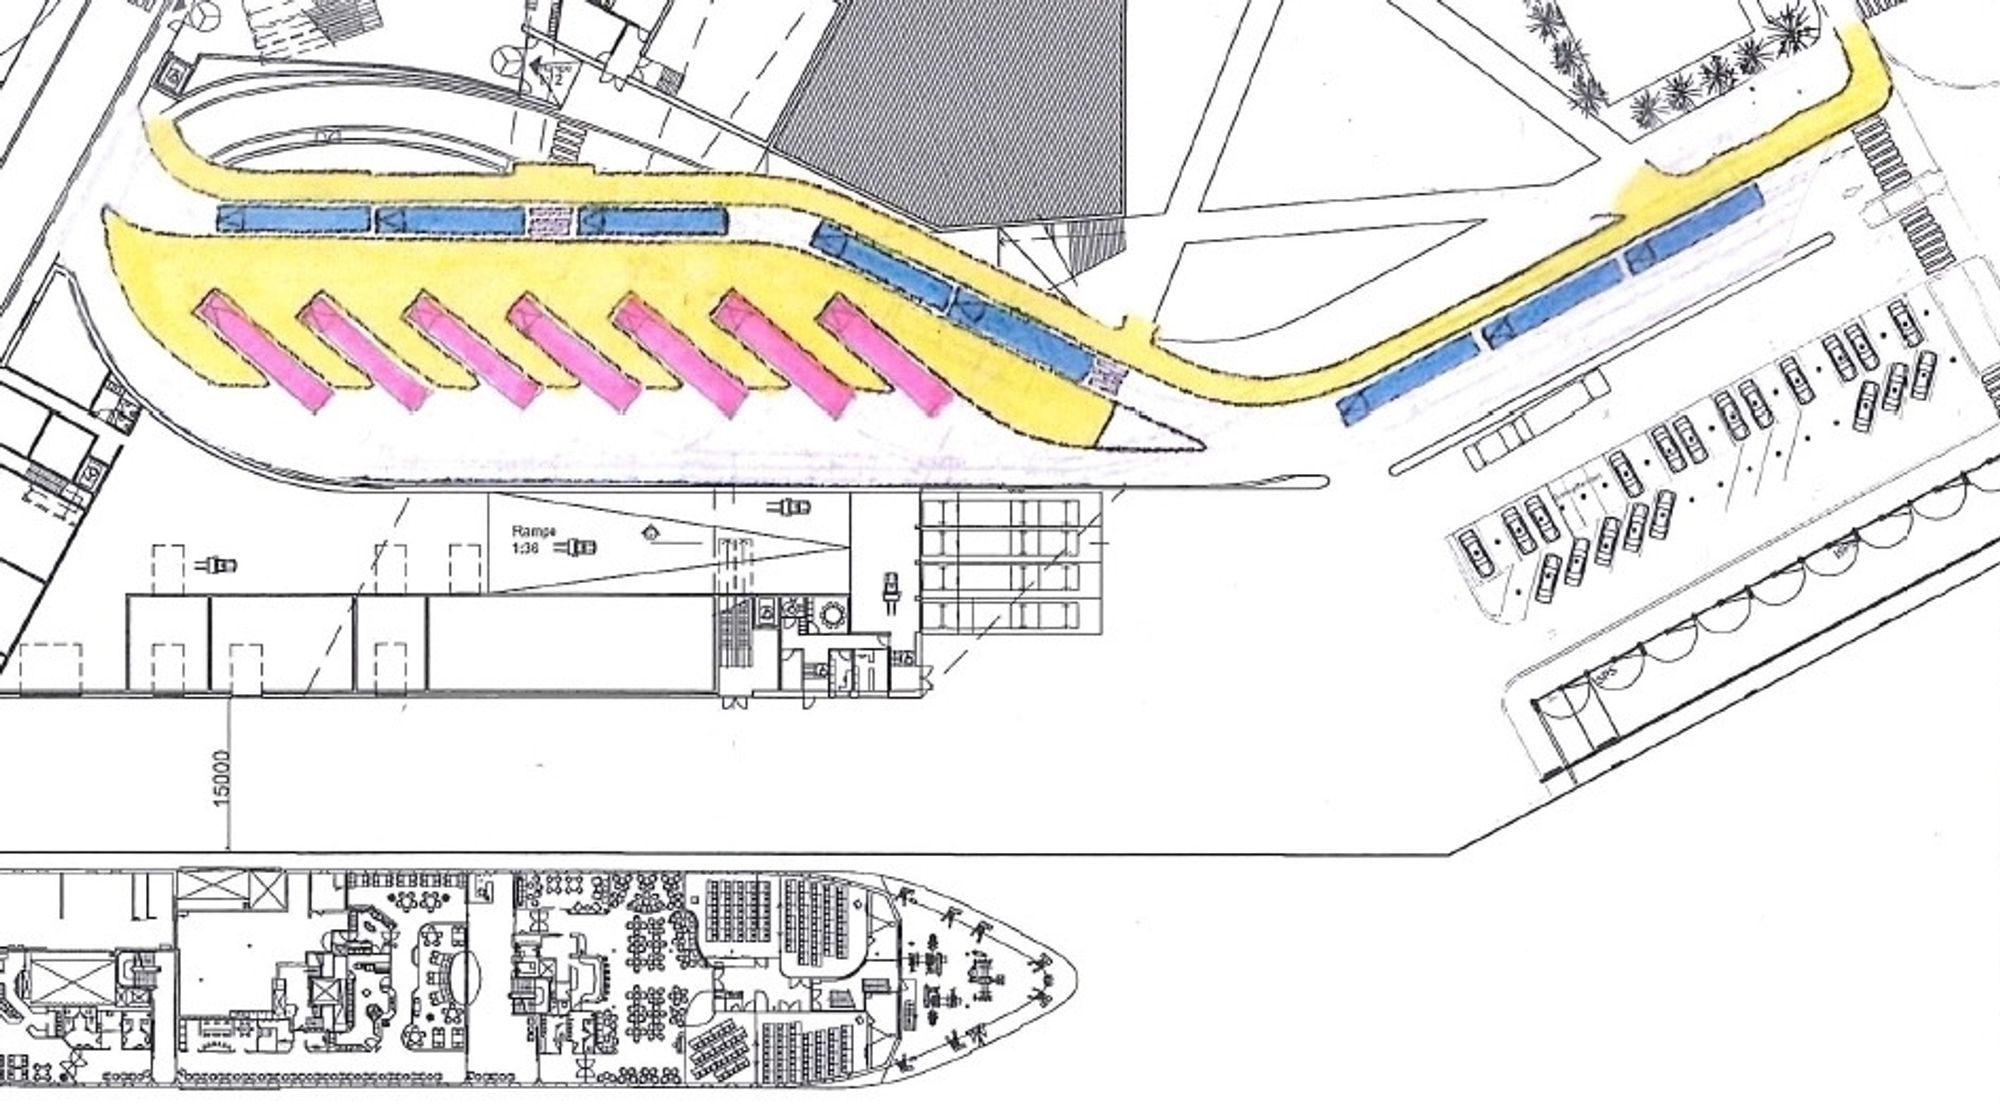 Tegningene viser bakkeplan i den nye terminalen. De røde bussene er rutebusser, de blå er turbusser for hurtigrutepassasjerer, og det gule arealet er perronger og fortau. (Ill.: Tromsø Havn KF)